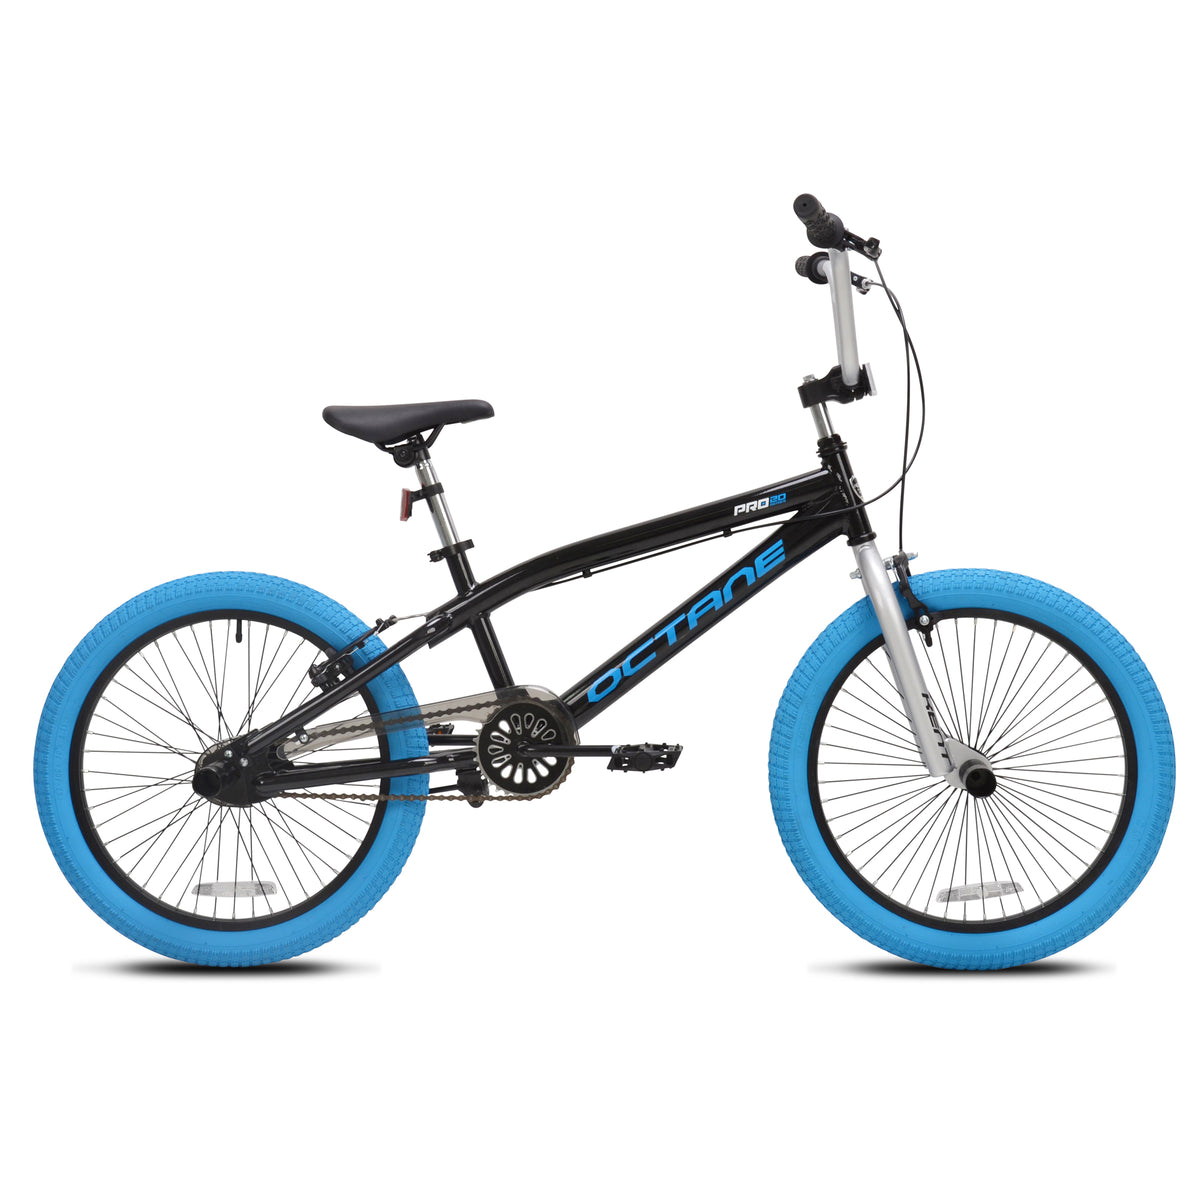 20" Kent Octane | Bike for Kids Ages 7-13